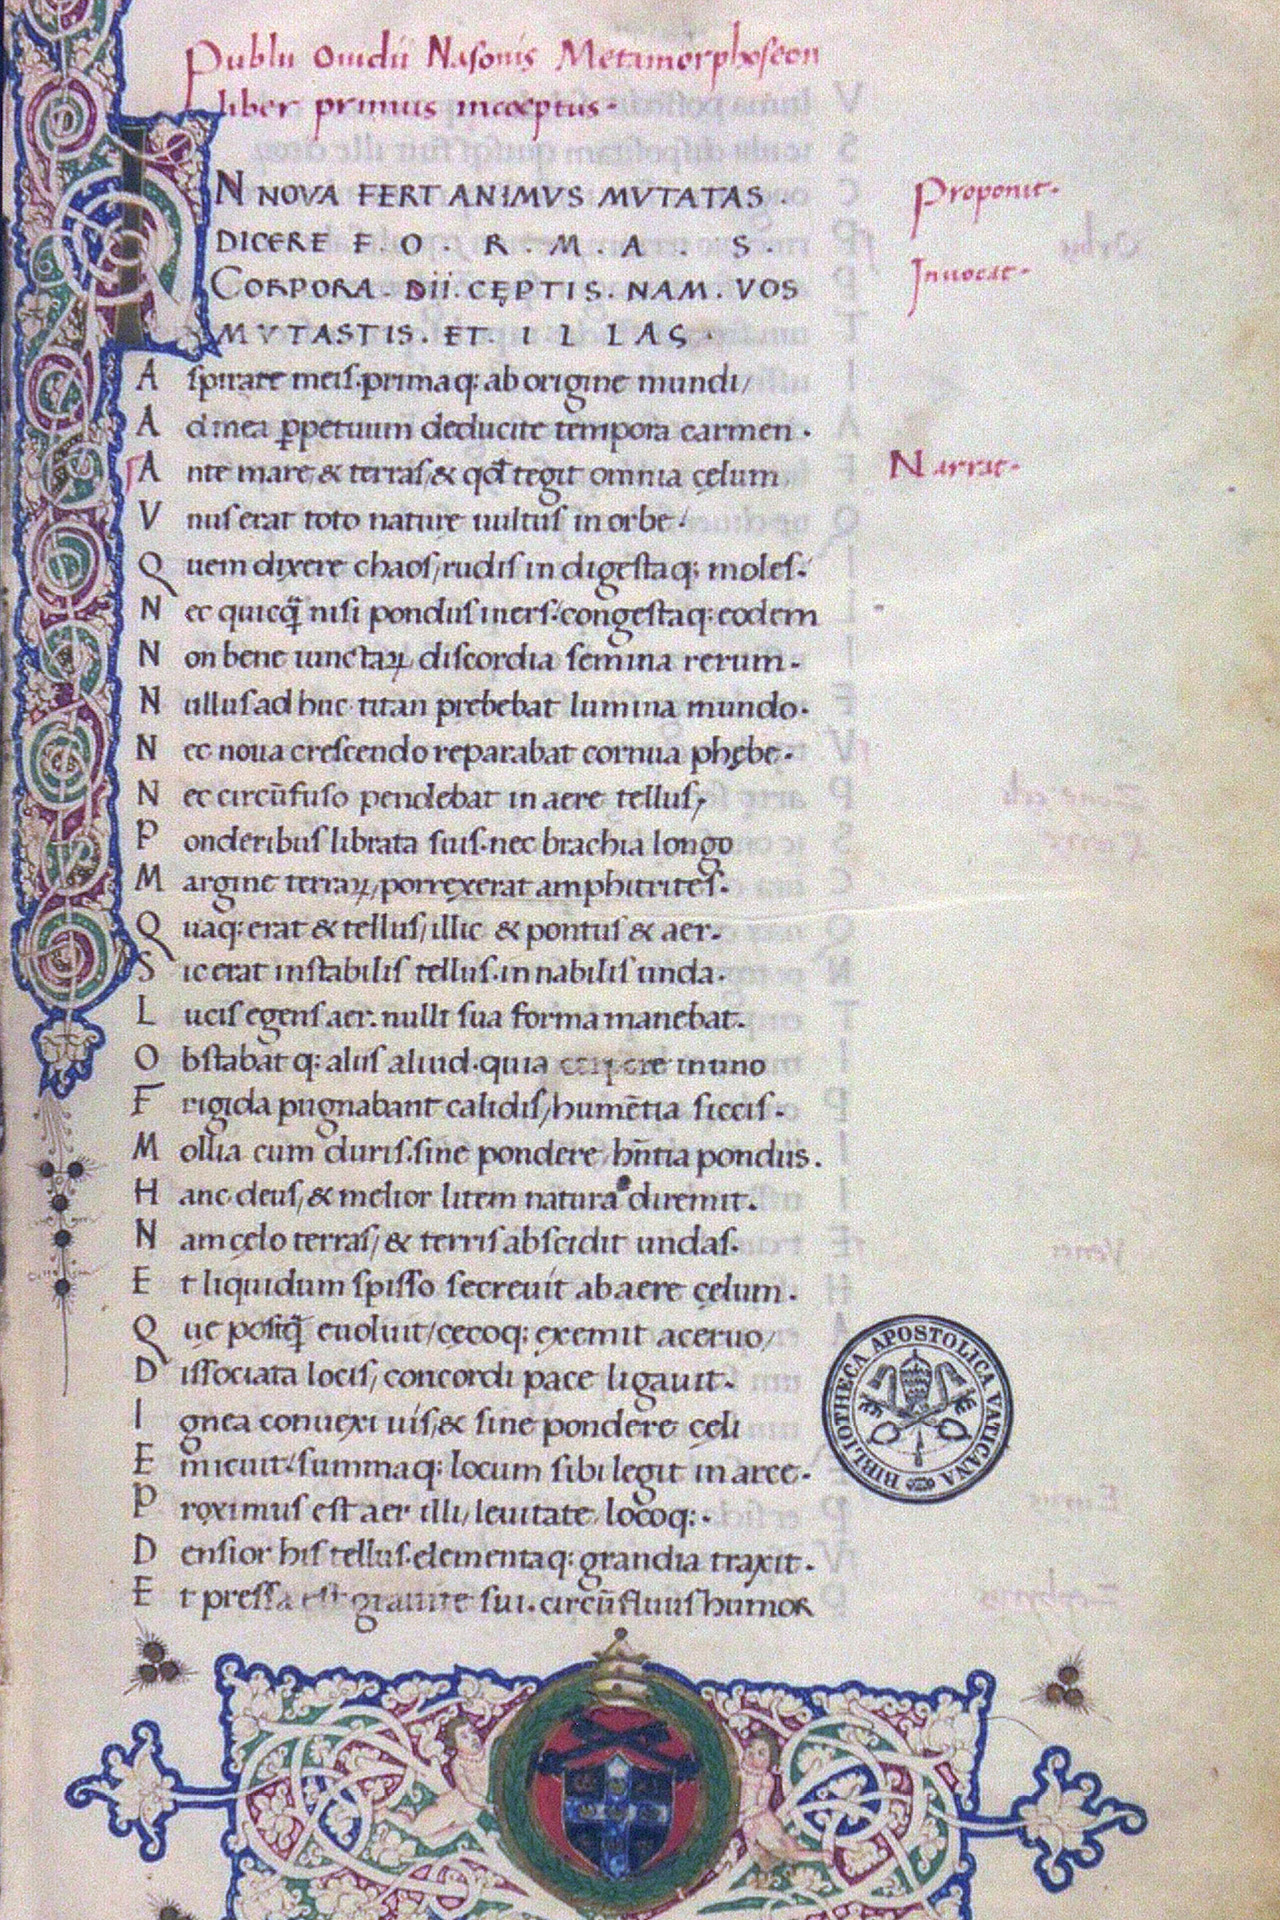 Der Anfang der Metamorphosen von Ovid in Latein in der Handschrift Biblioteca Apostolica Vaticana, aus dem 15. Jahrhundert.